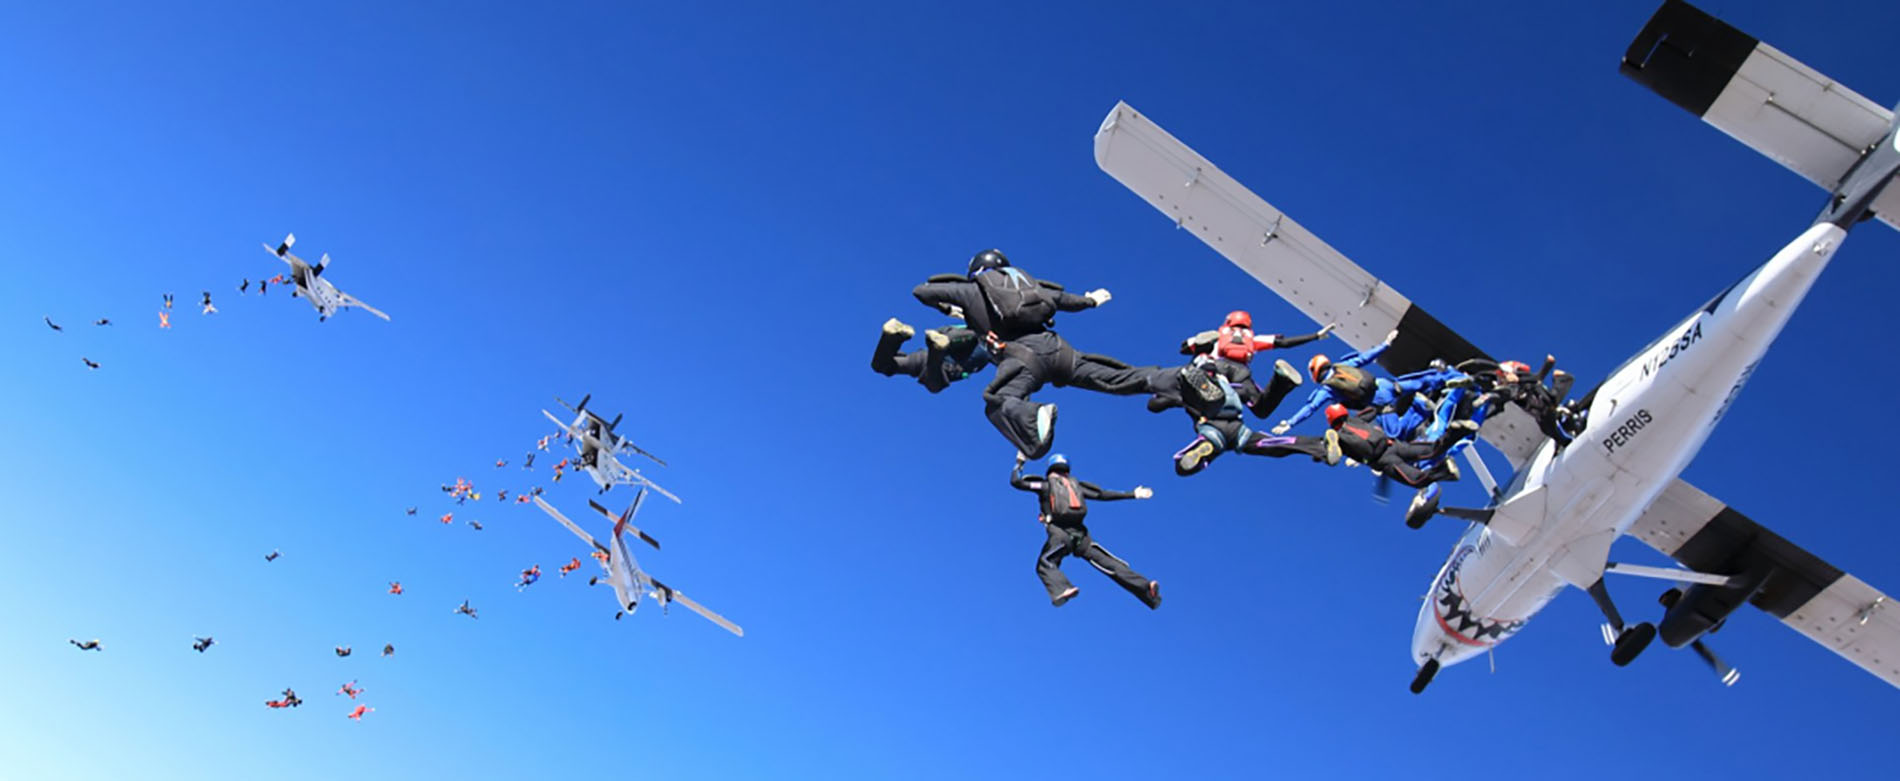 Skydiving sport